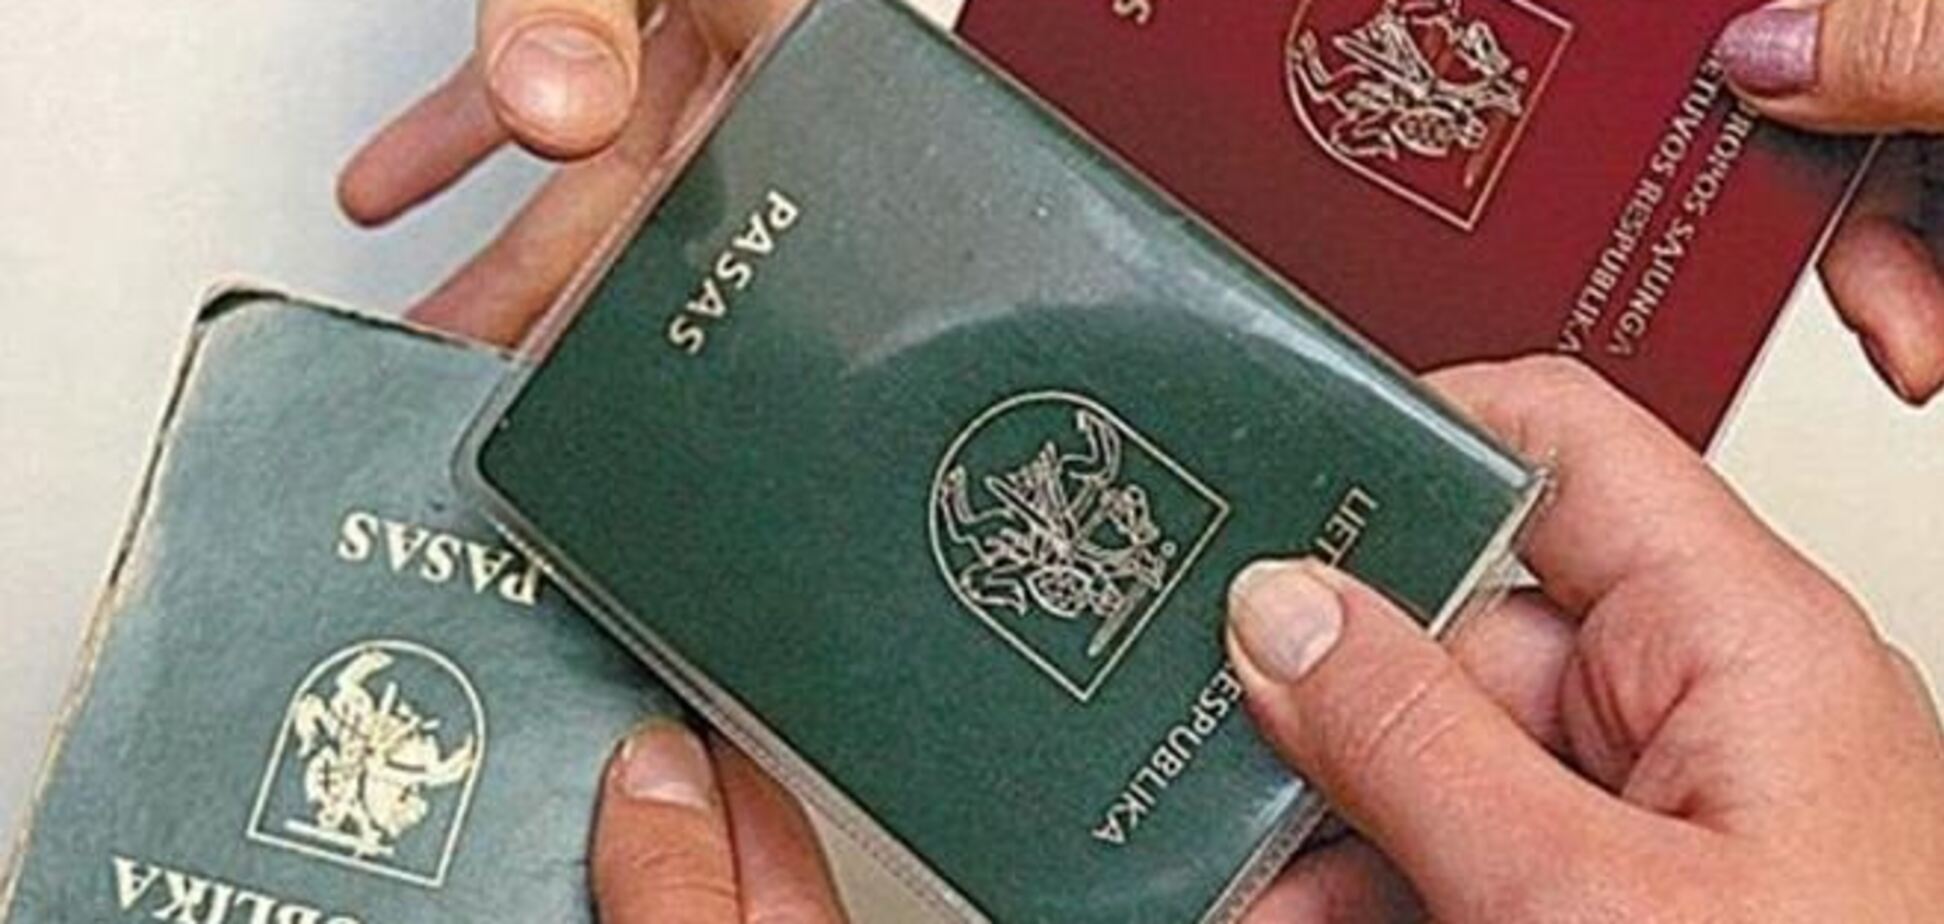 У литовські паспорти повернуть графу 'національність'